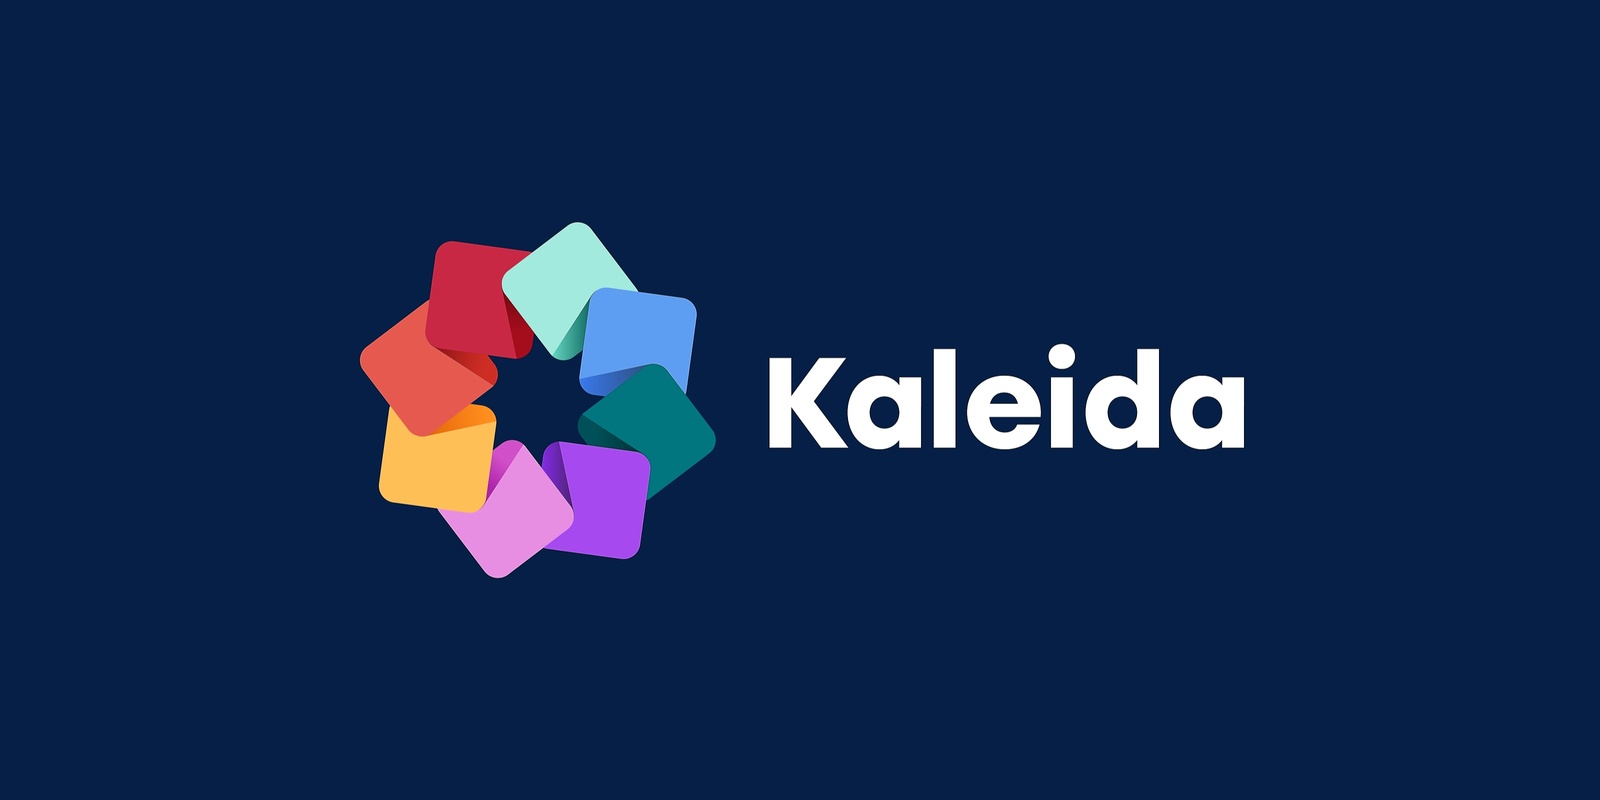 Kaleida's banner